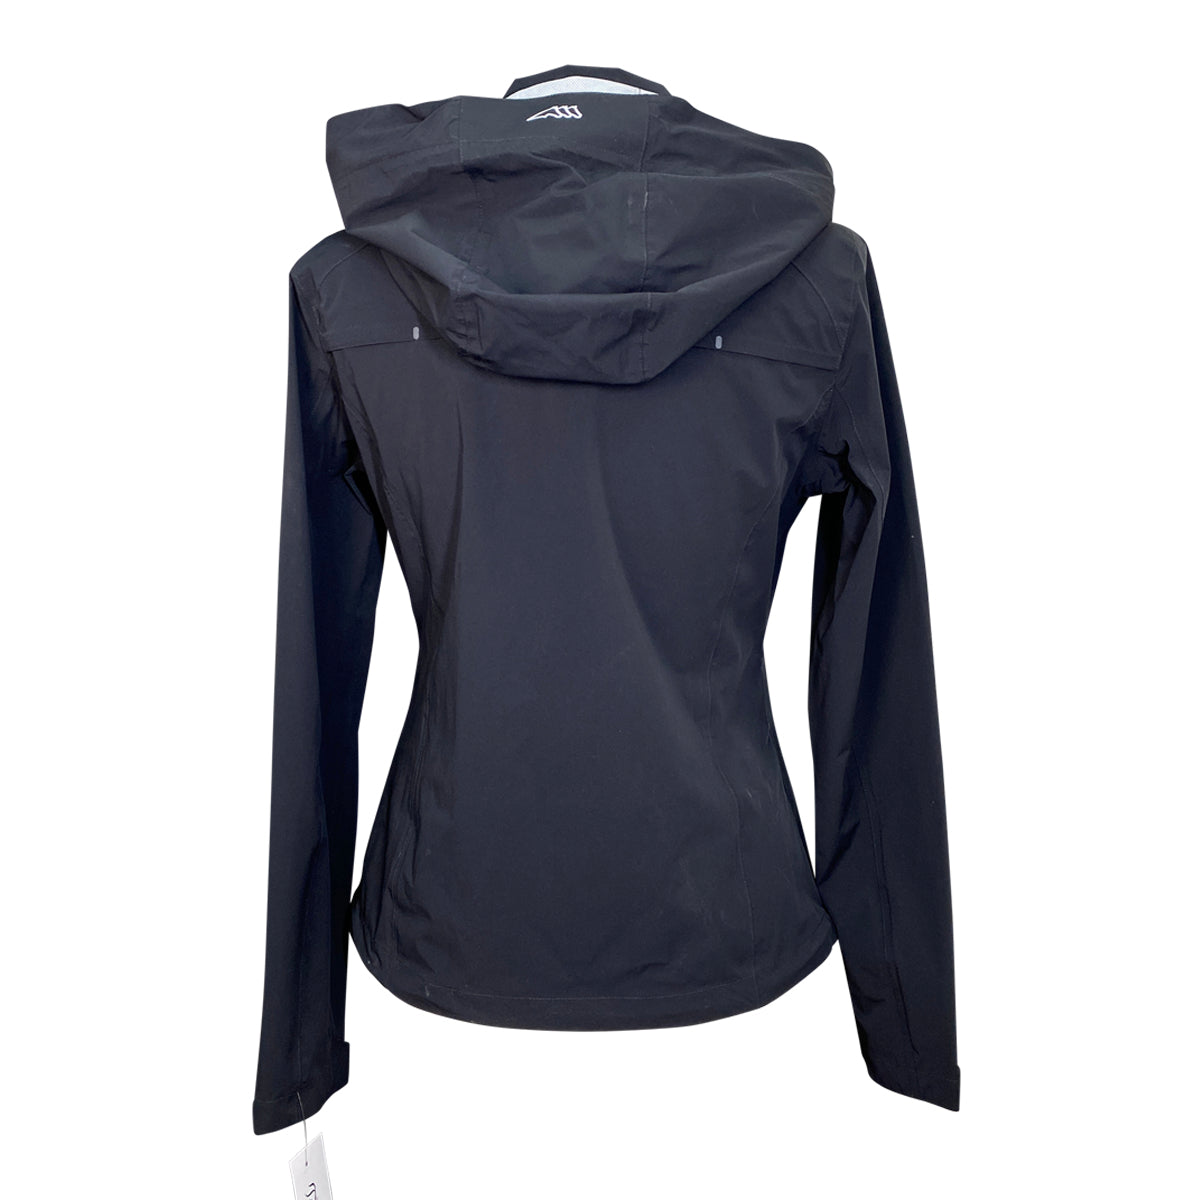 Equiline 'Catec' Waterproof Raincoat in Black